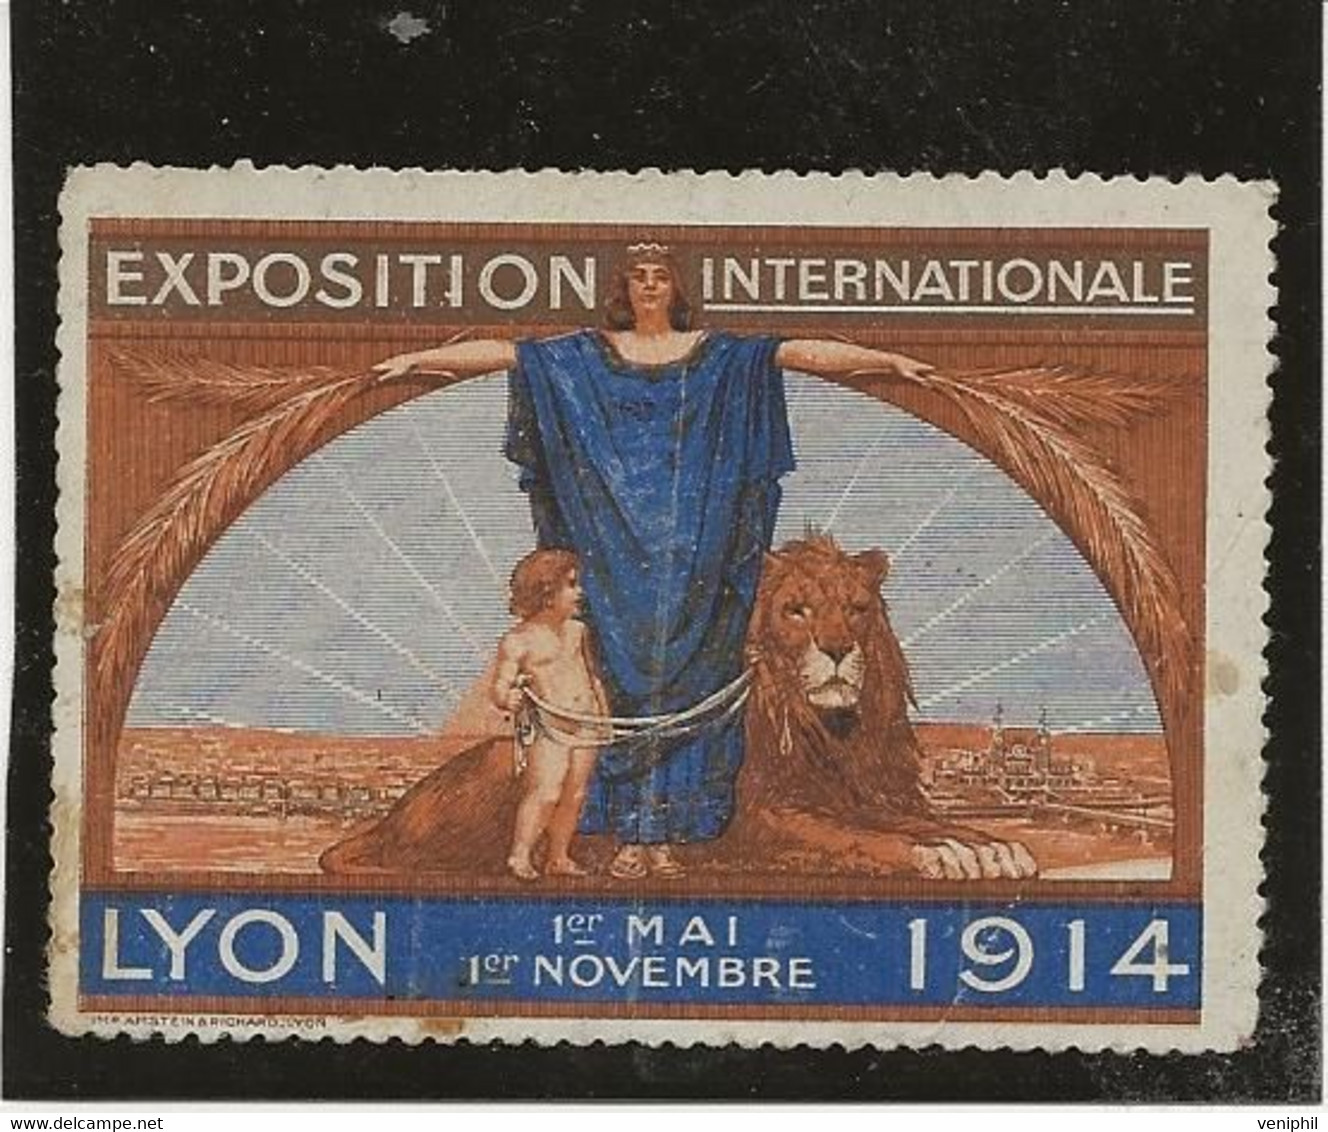 VIGNETTE EXPOSITION INTERNATIONALE LYON  1ER MAI -1ER NOVEMBRE - 1914 - Tourismus (Vignetten)